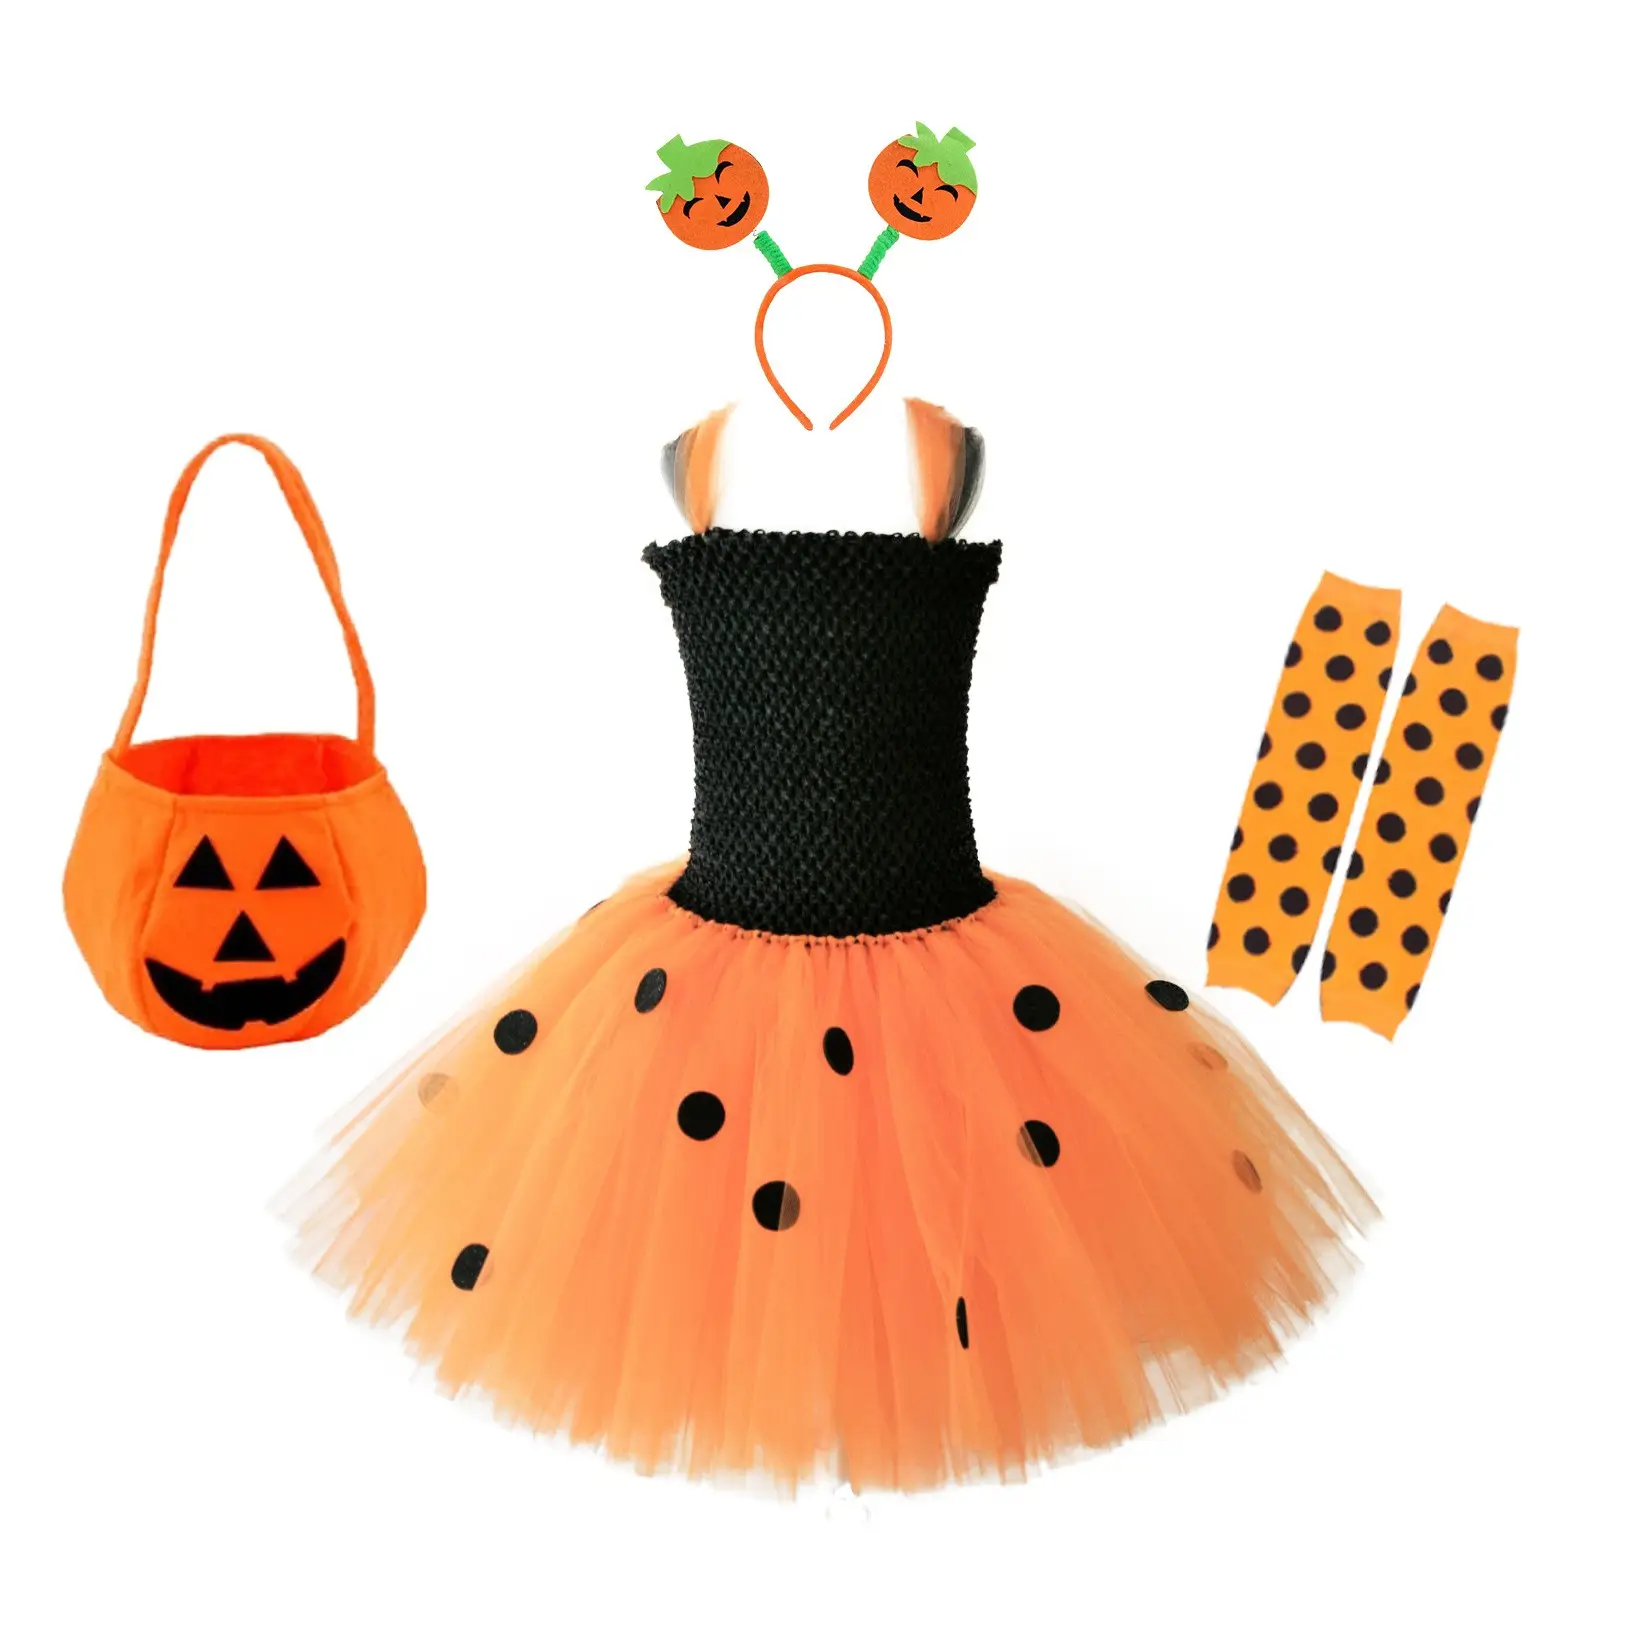 Costume per le ragazze prestazioni cosplay per bambini ragazze Halloween gonna zucca vestito bambina